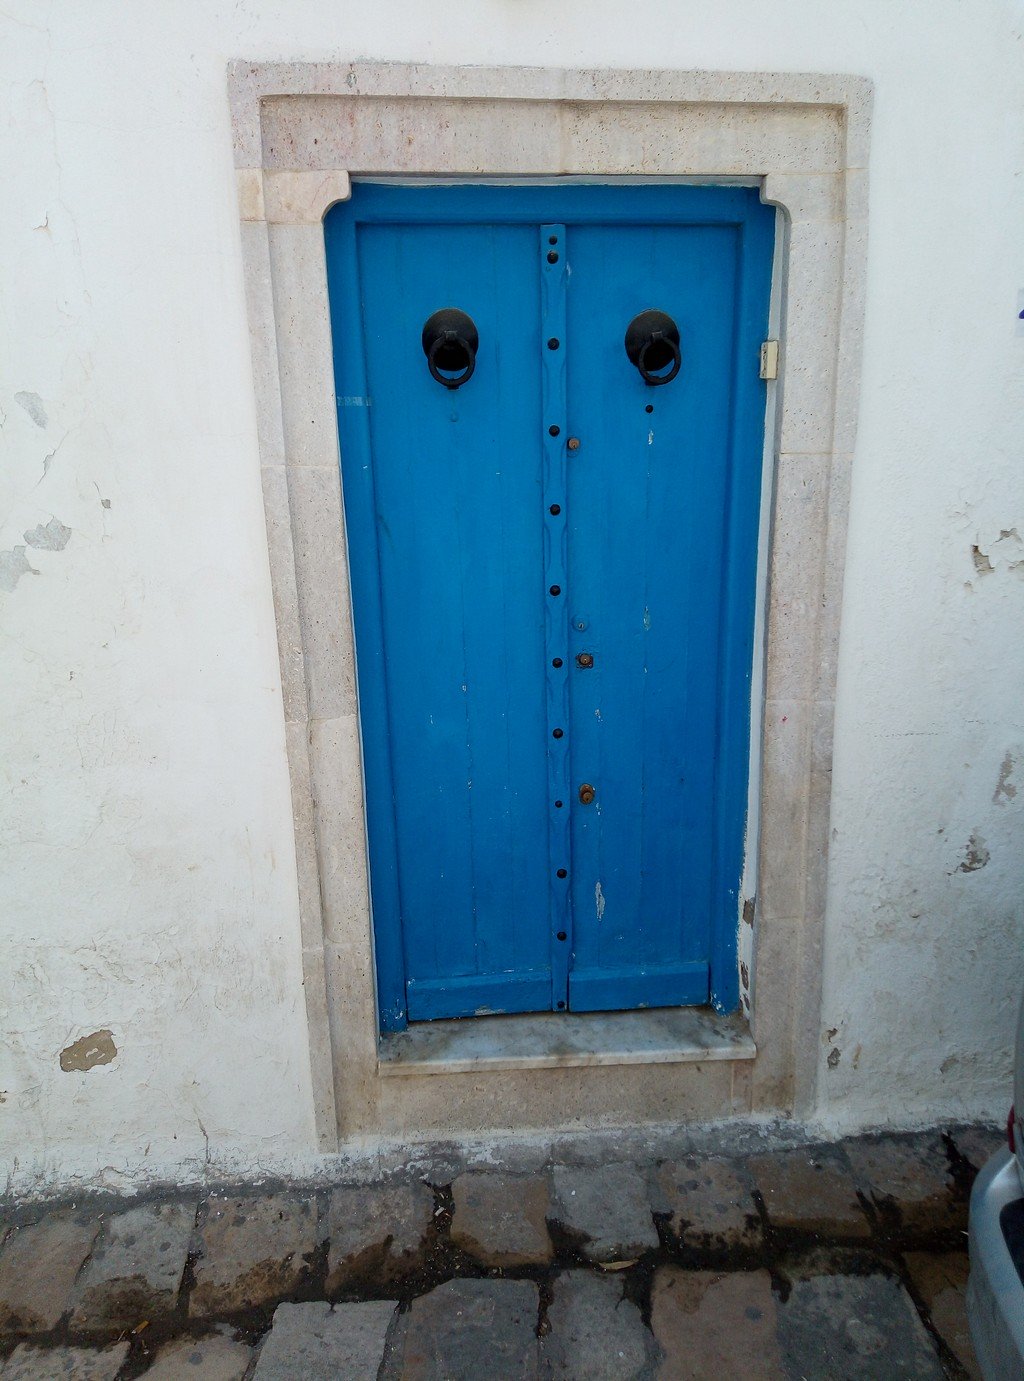 Сиди-Бу-Саид, сиди бу саид, тунис, экскурсия, город, символ туниса, ладонь, почему тунис, почему, стоит ли ехать, стоит ли, фото, фотографии, картинки, голубое, белое, синее, синий, дом, здание, море, залив, белый, дверь, окно, карфаген, как проехать, куда, где, сине-белое, сине-белый, голубые, двери, рука, брелок, флаг, герб, ладонь с дверью, голубая дверь, голубое окно, синяя дверь, 